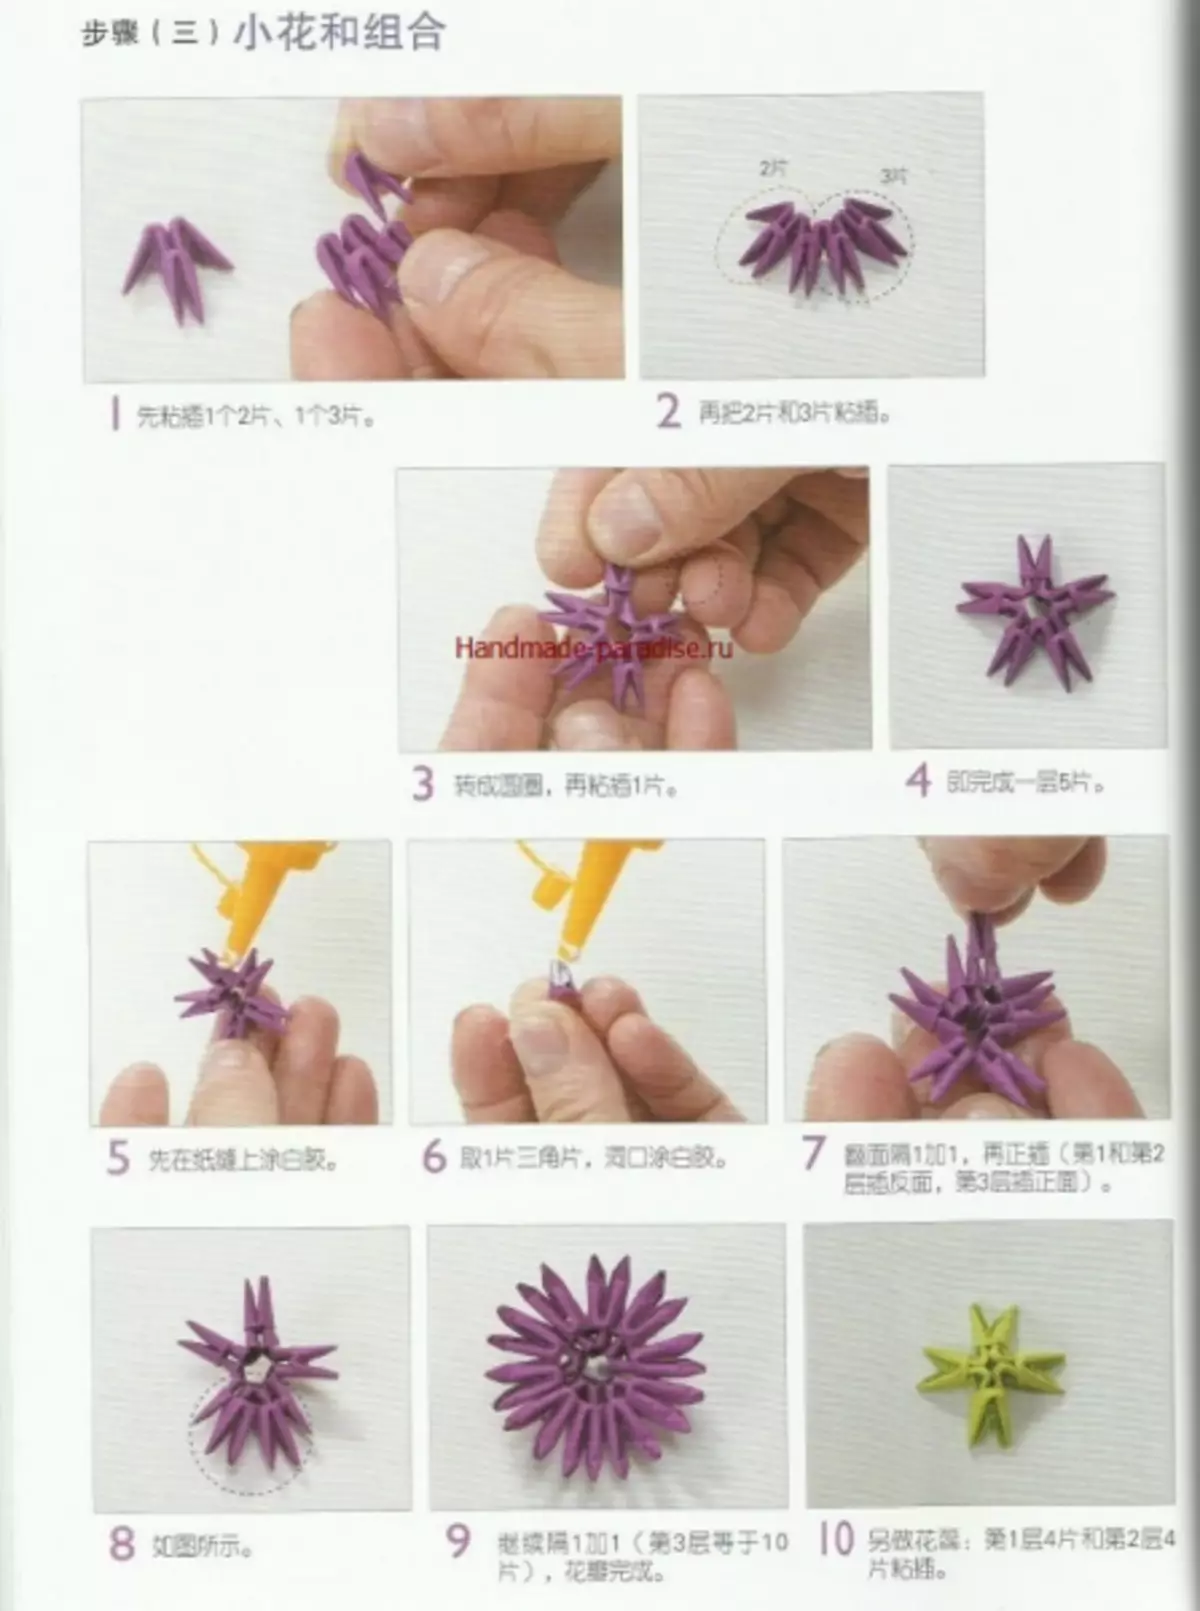 Origami modular. Revista xaponesa con clases maxistrais